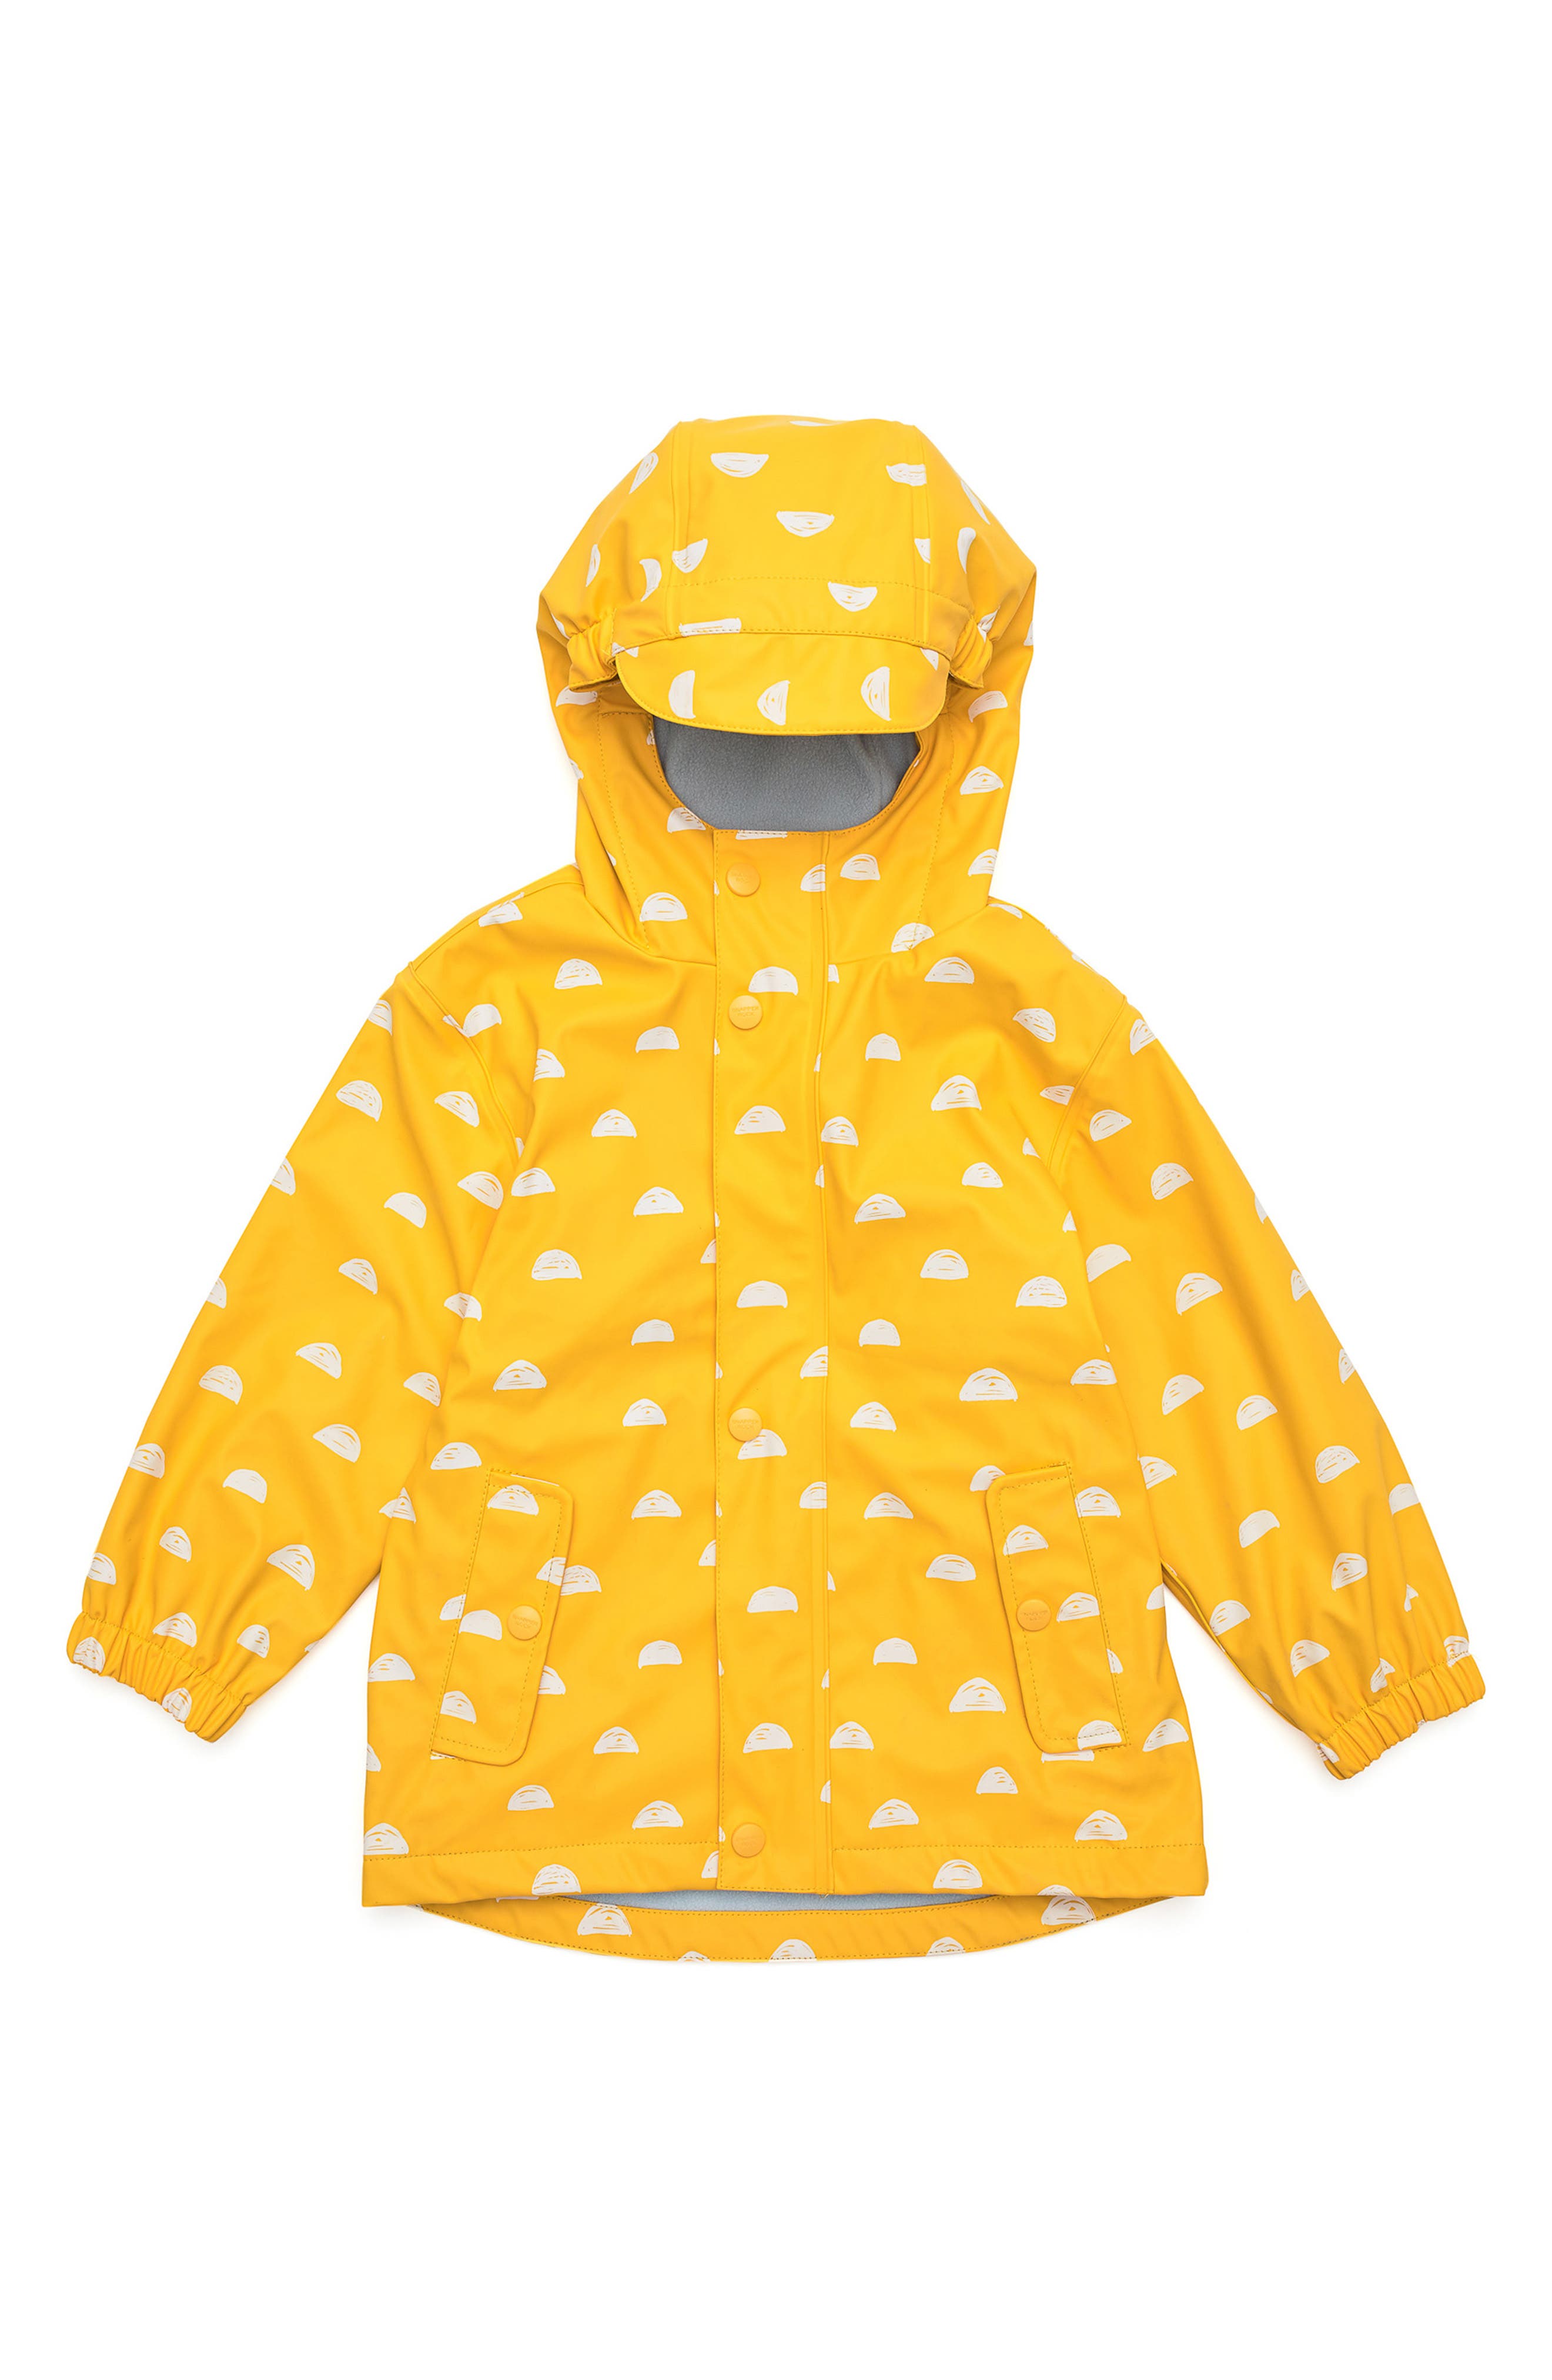 Nordstrom Clothing Jackets Rainwear Kids Sun Cloud Waterproof Raincoat in Yellow at Nordstrom 